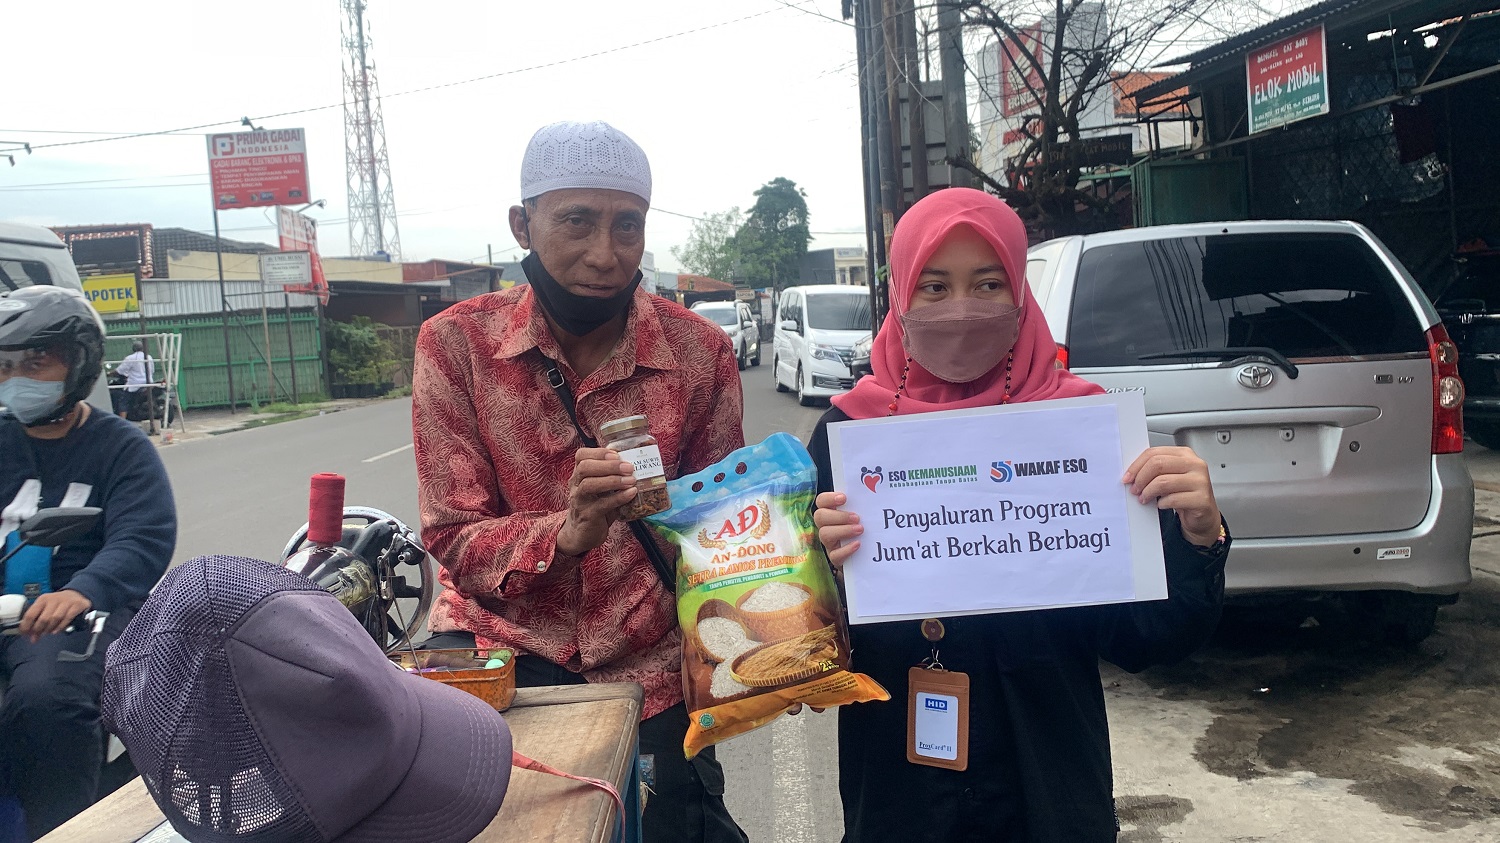 Penyaluran Program Jum’at Berkah Berbagi di daerah Tangerang Selatan